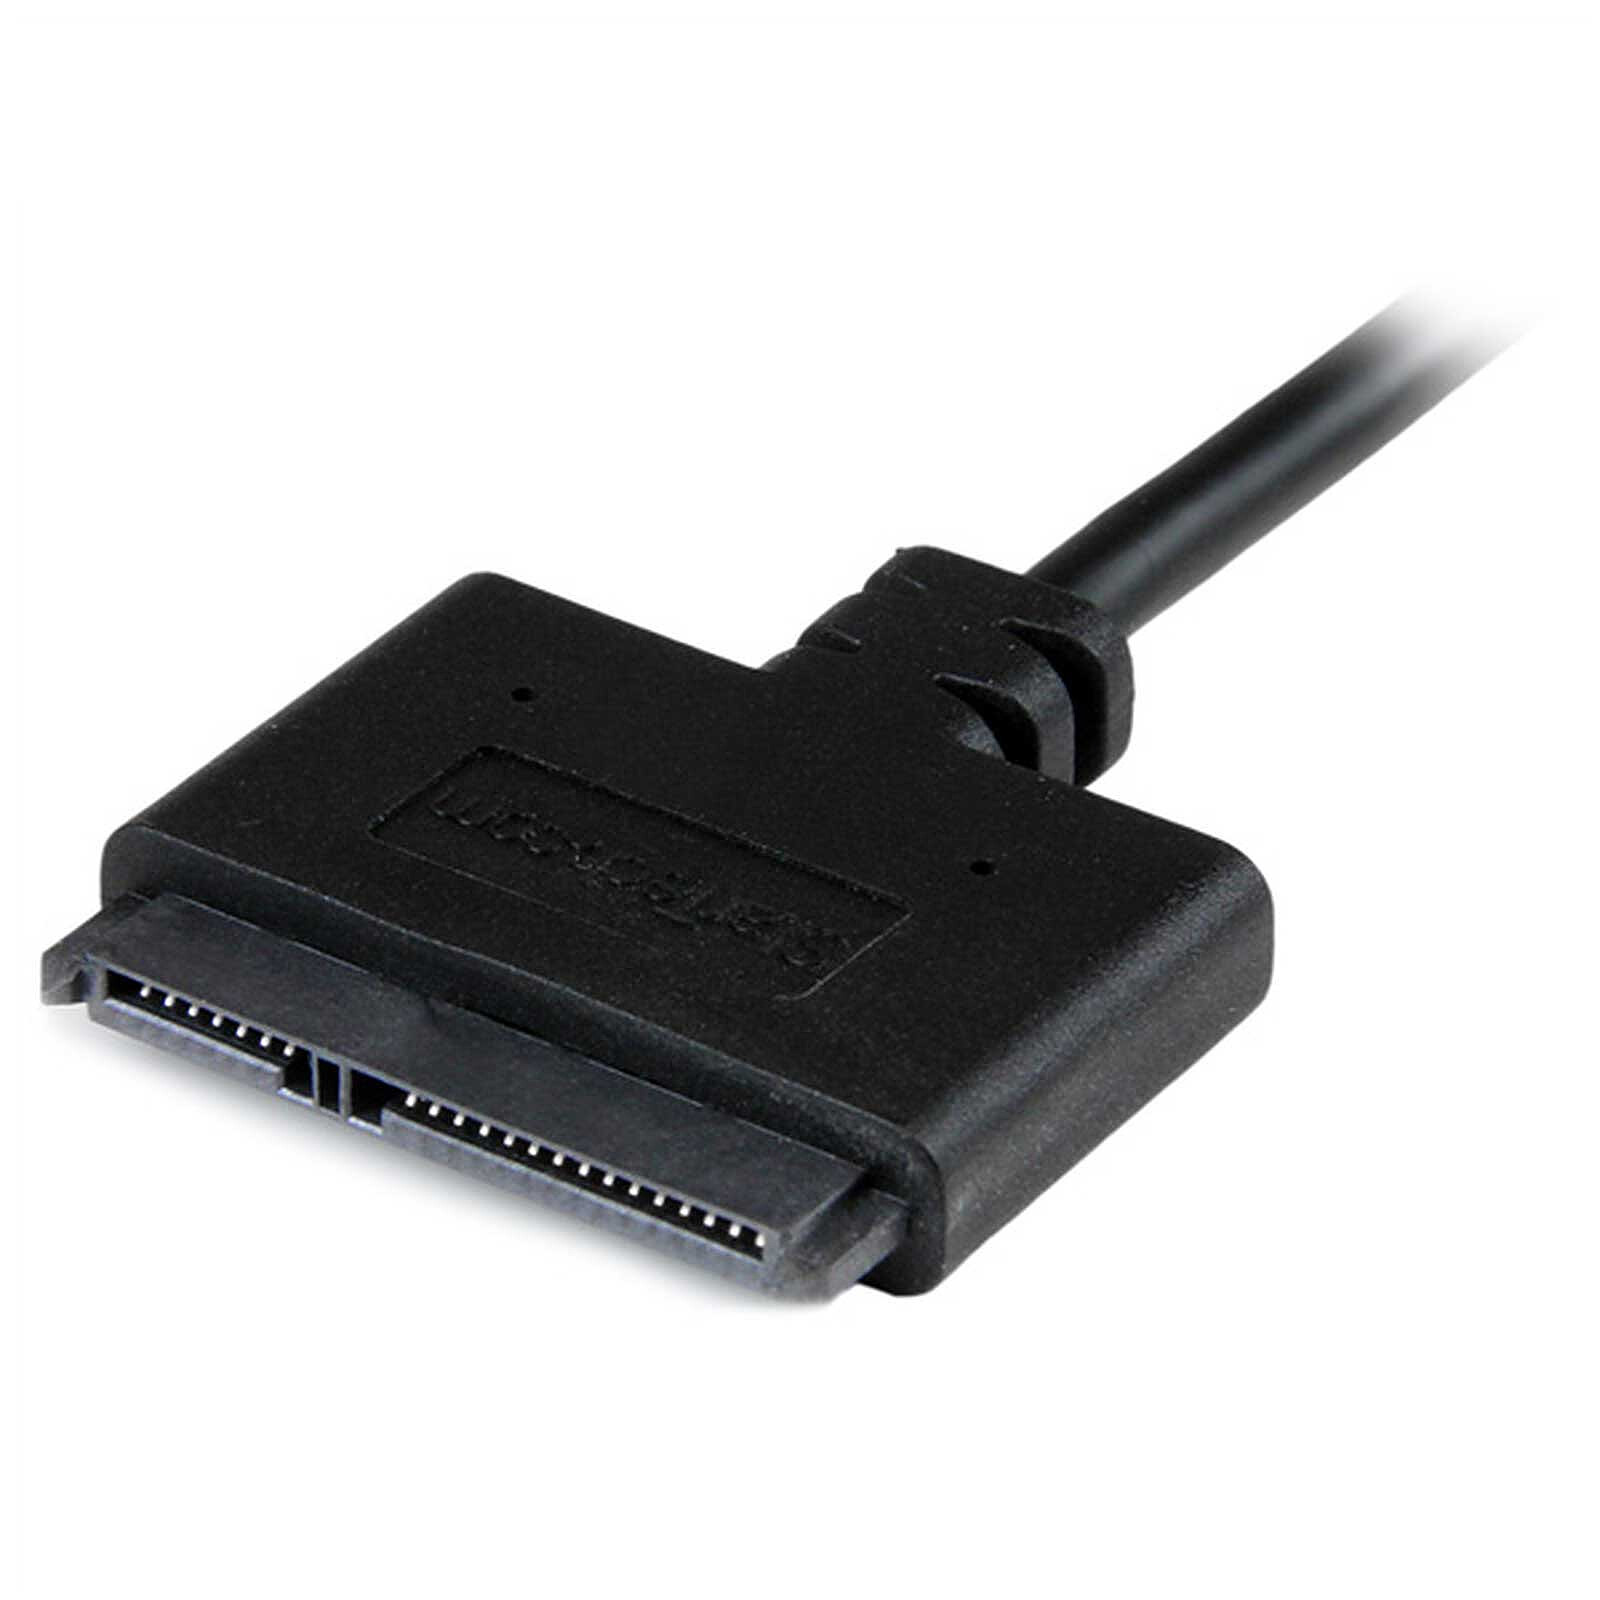 Utiliser un ancien disque dur pour le stockage en externe pour 3€ : SATA et  PCIE en USB 